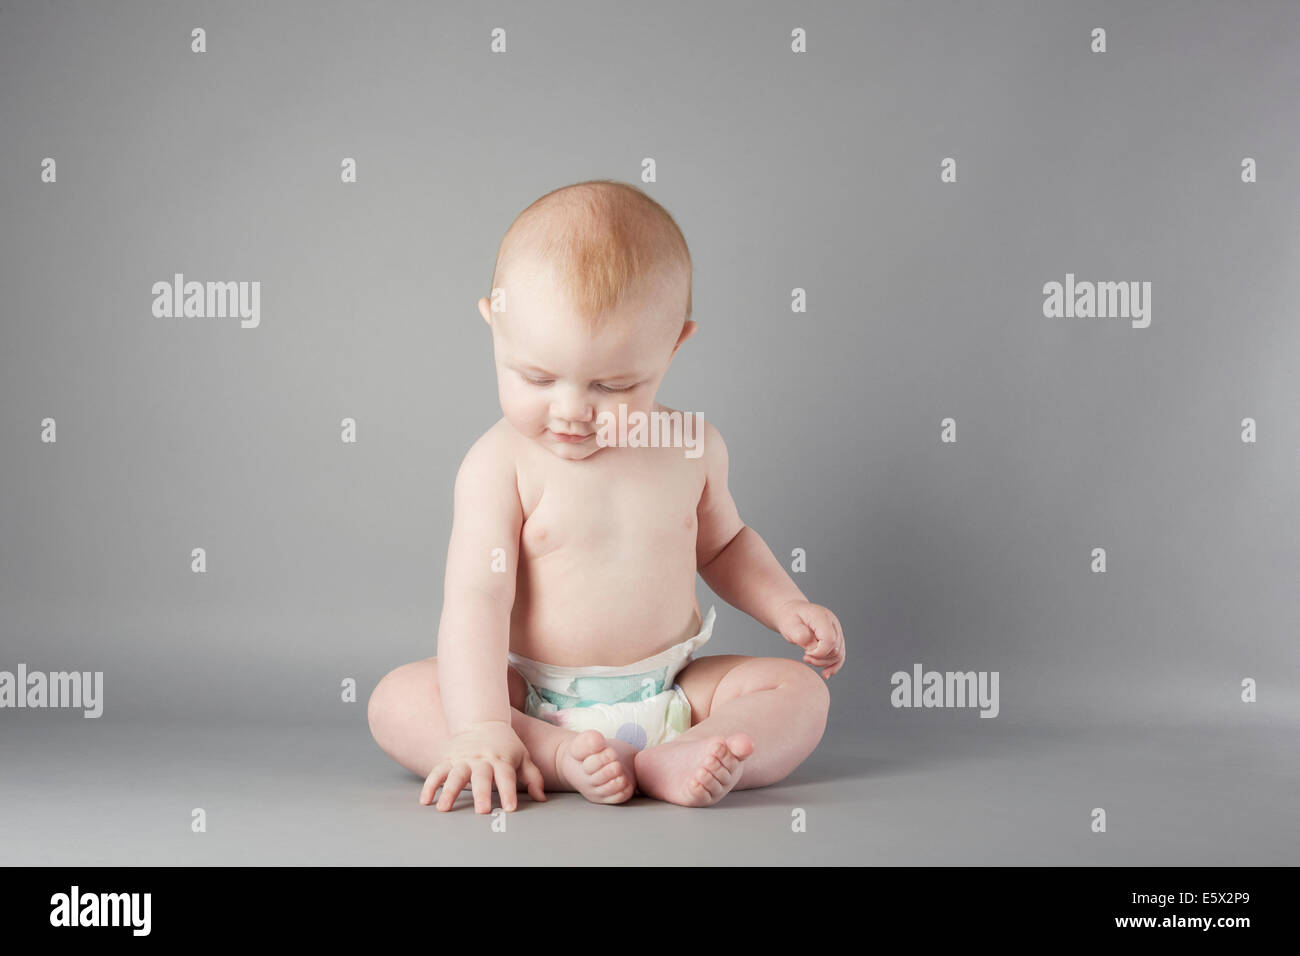 Retrato de estudio de Baby Boy sentado y tocando el suelo Foto de stock